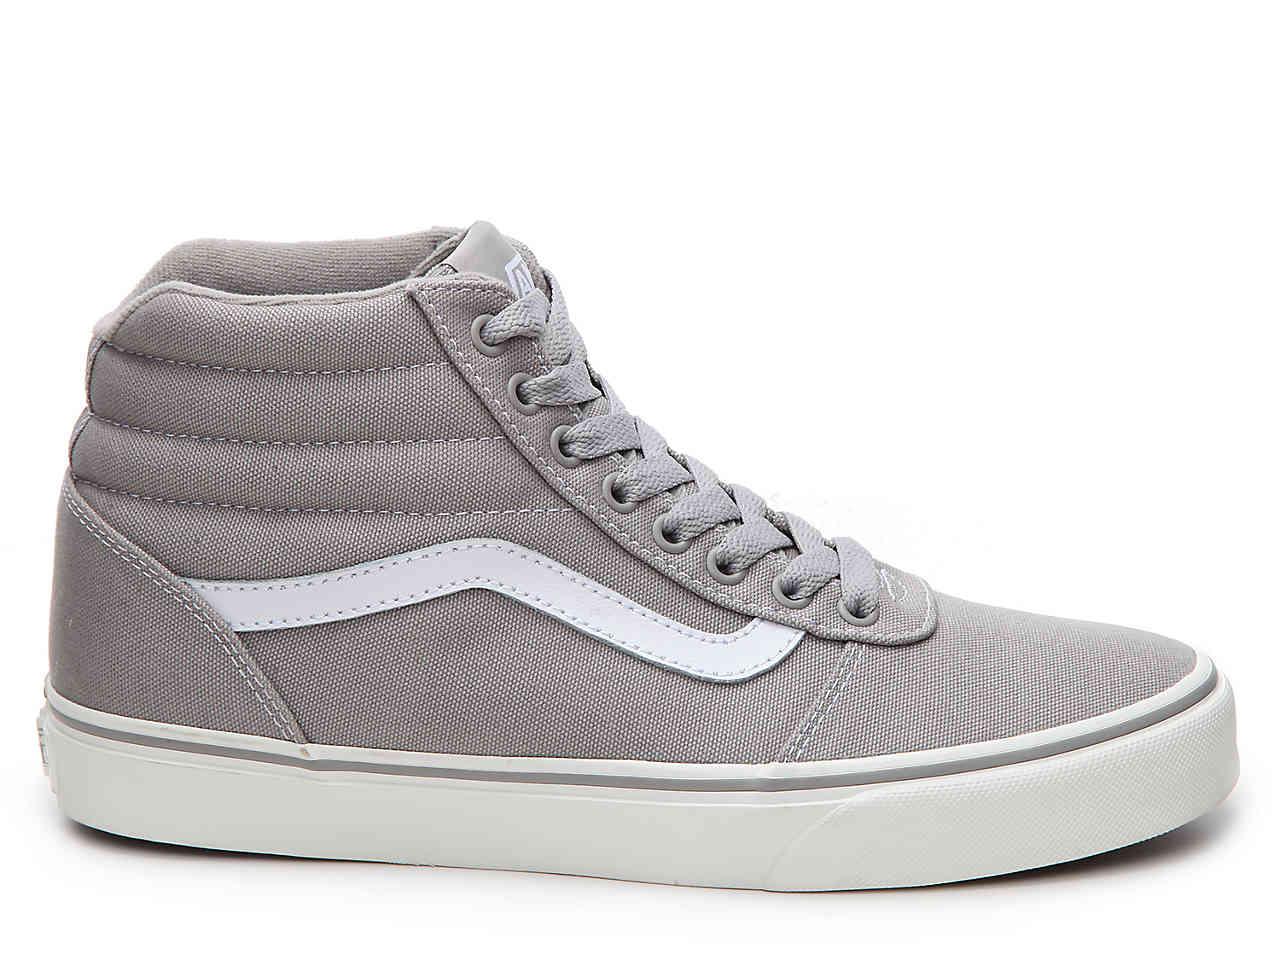 Vans Ward Hi Canvas High-top Sneaker in Grey (Gray) for Men - Lyst